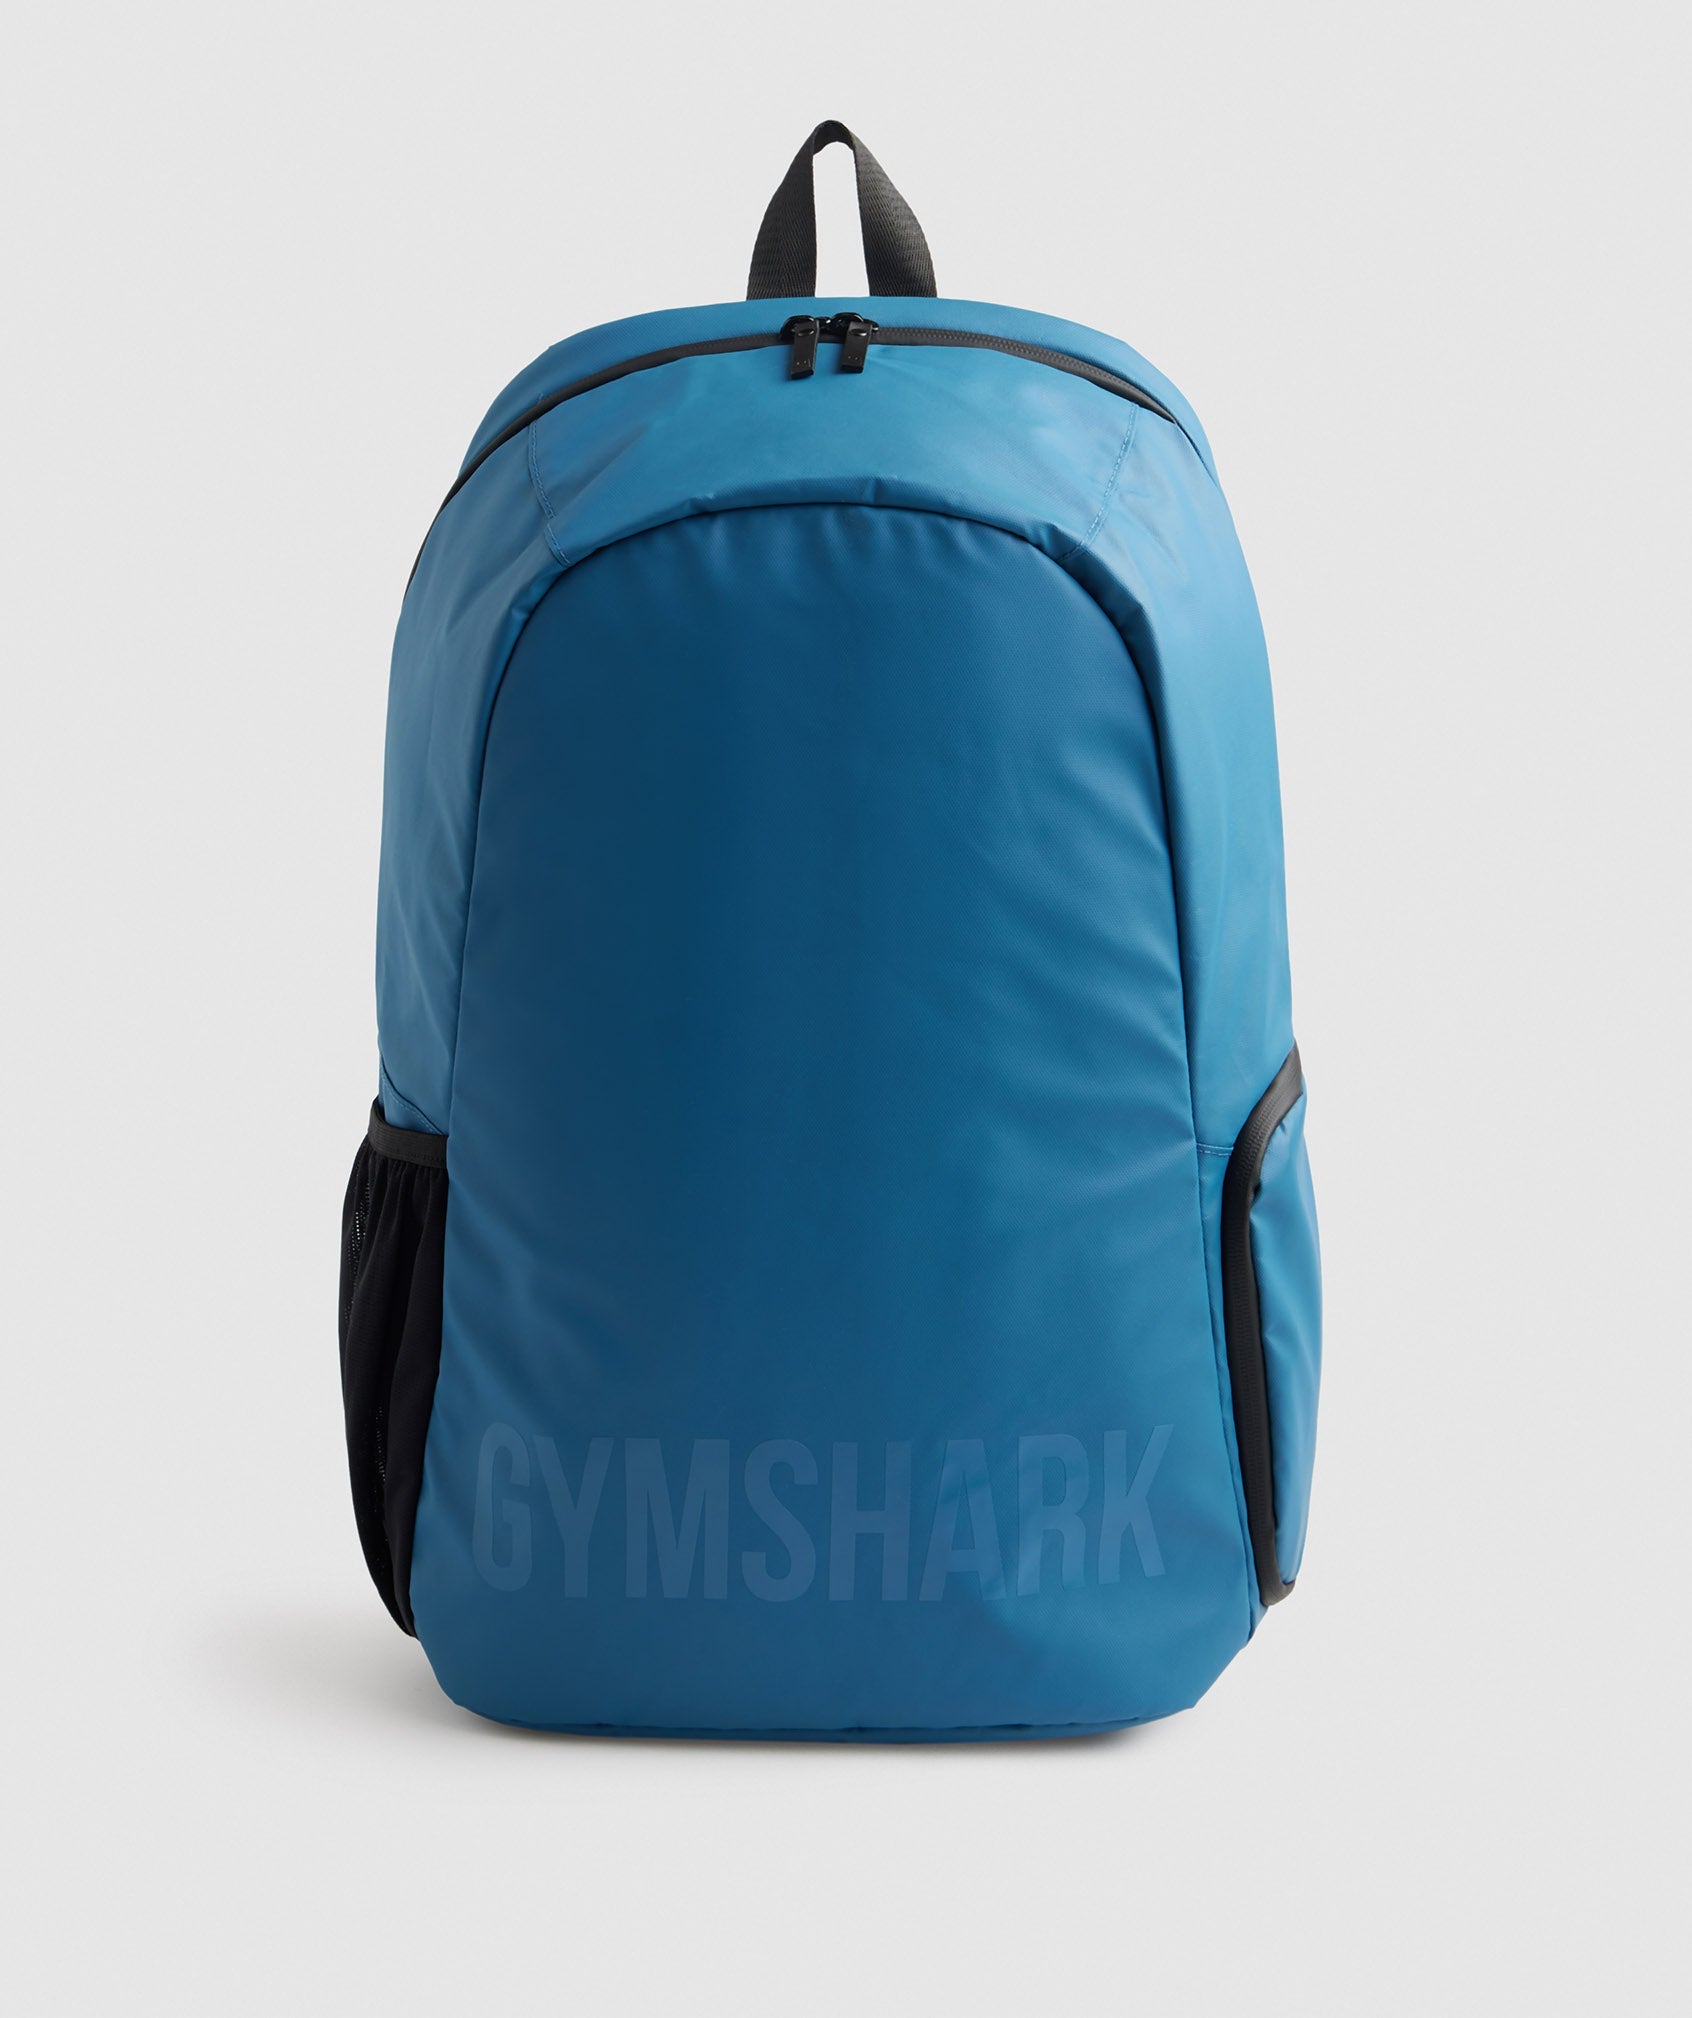 Gymshark X-Series 0.1 Tasche Herren Blau | 9781053-PM